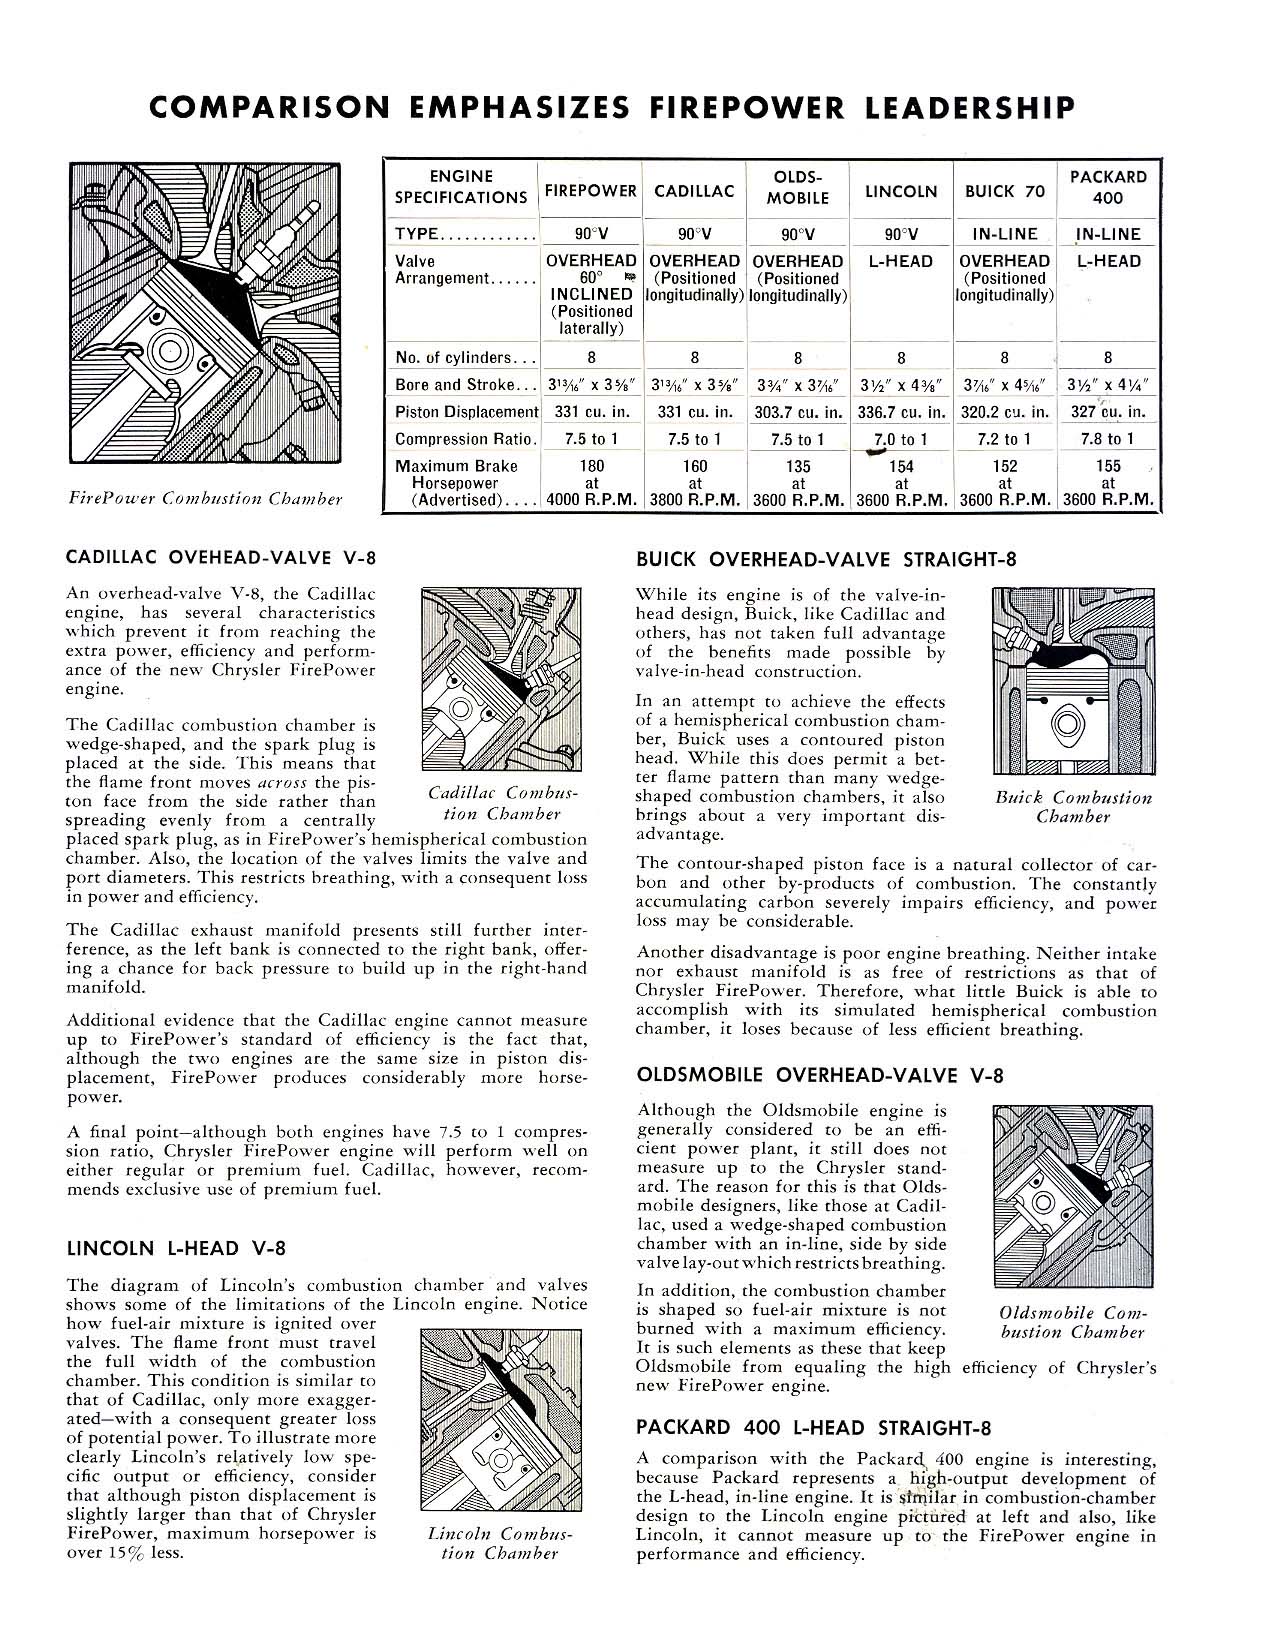 1951_Chrysler_FirePower_Advantages-06